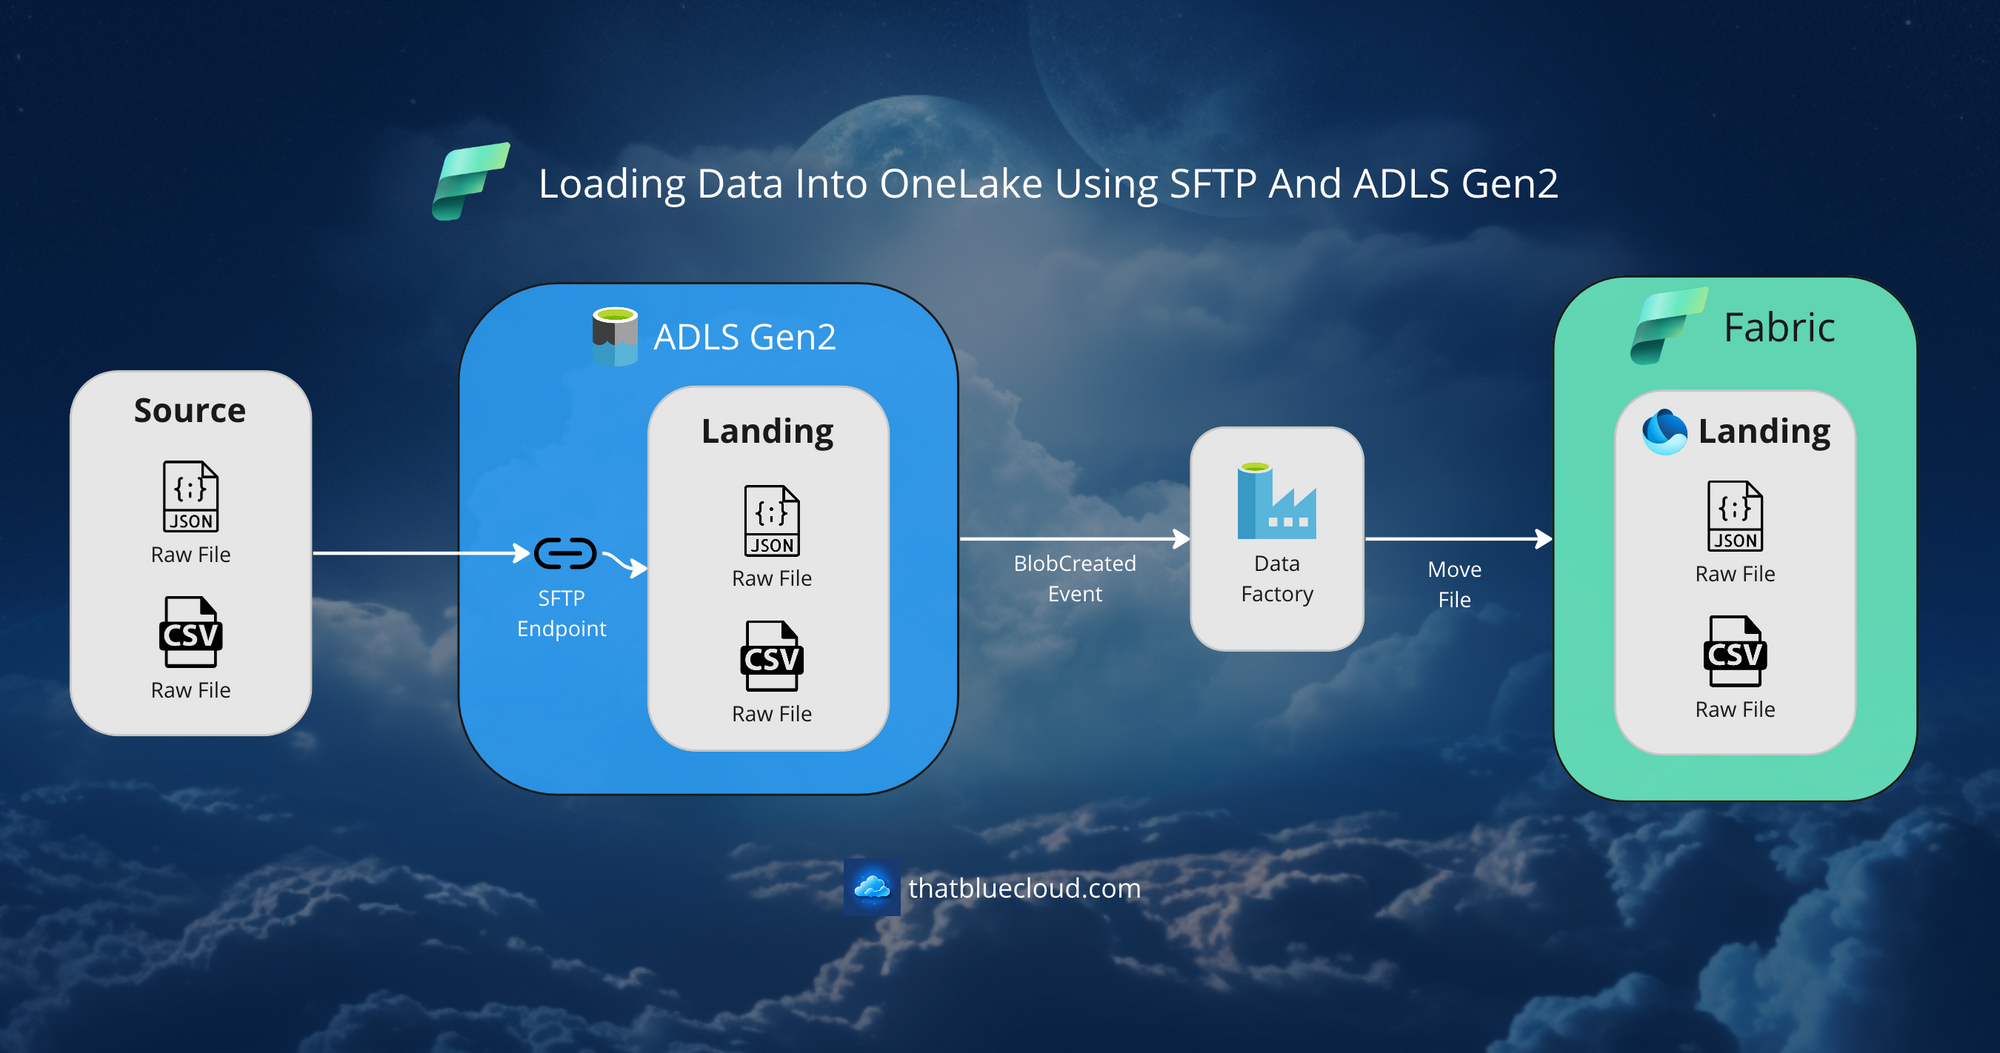 Loading Data Into OneLake via ADLS Gen2 SFTP